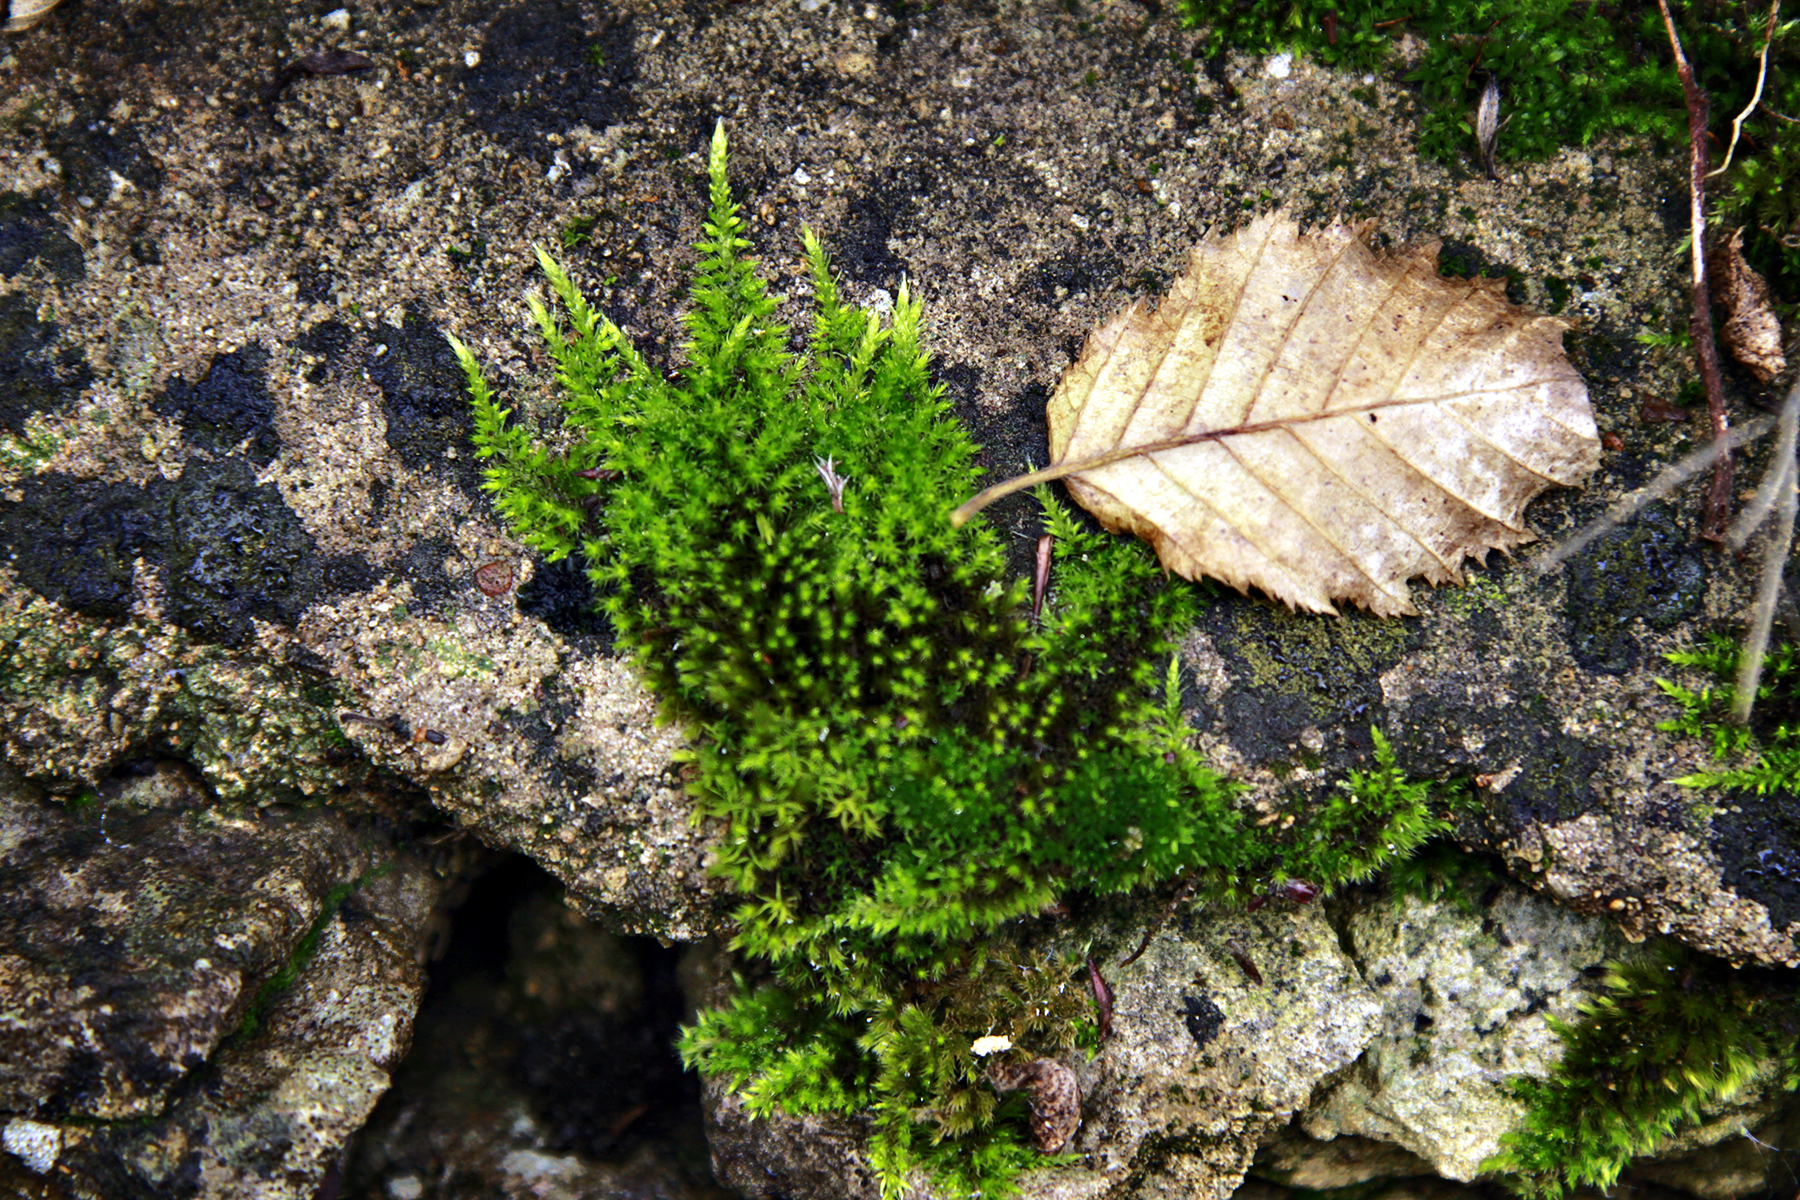 Autumn Leaf Cotswolds v2 - Image (c) Lancia E. Smith